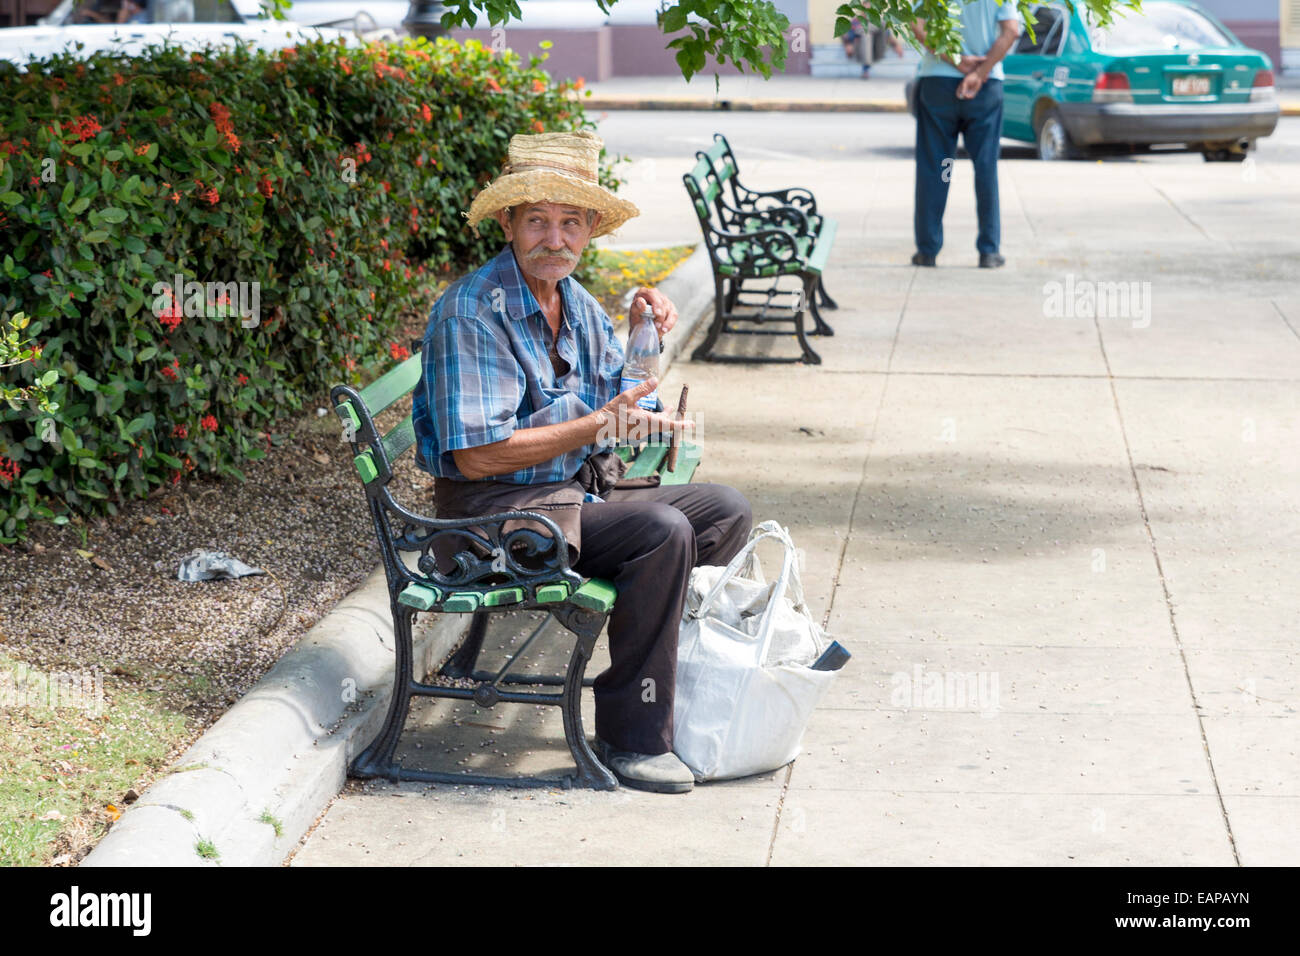 CIENFUEGOS, Kuba - 7. Mai 2014: Alter Mann mit Stroh Sobrero sitzen auf einer Bank im Quadrat von Cienfuegos, Kuba Stockfoto